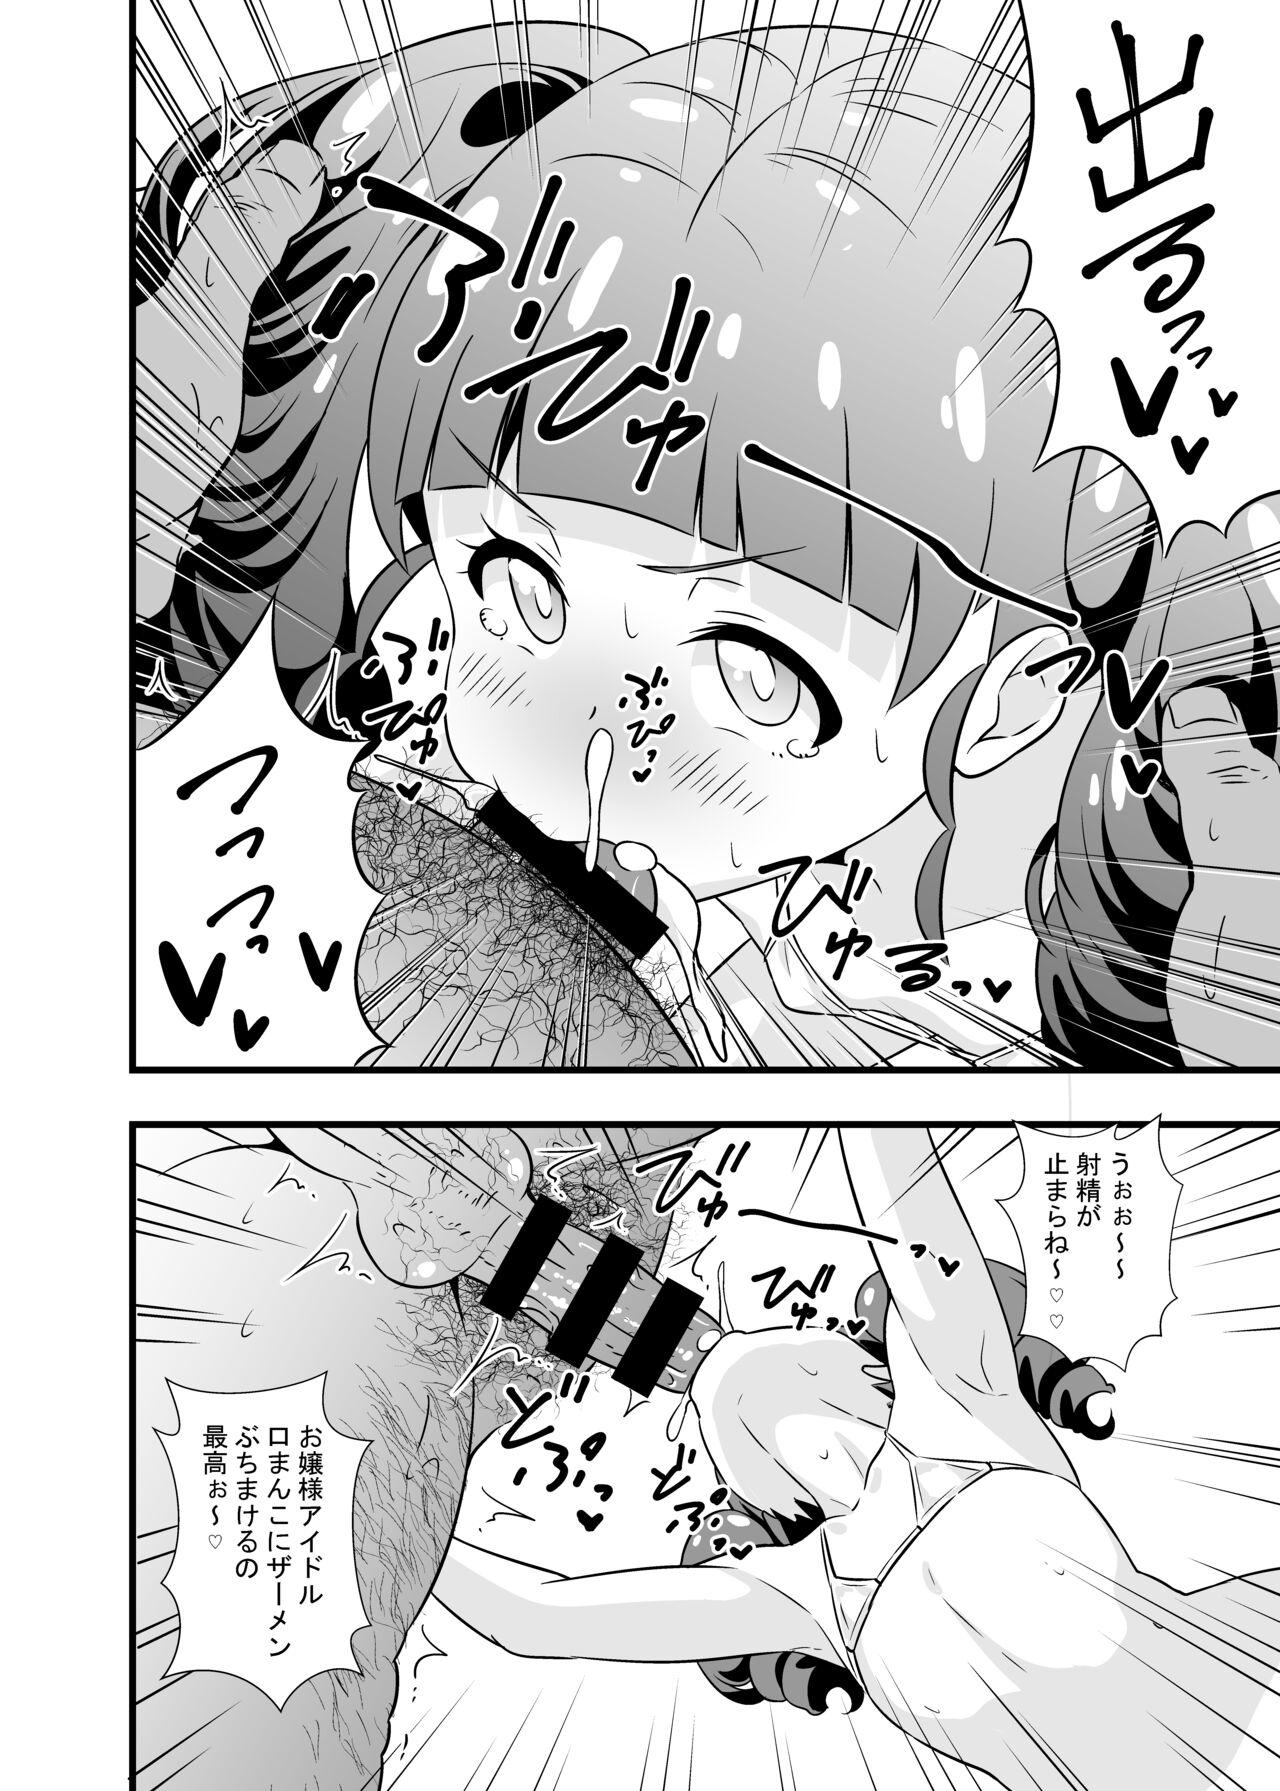 Sola Anna-chan no Hanayome Shugyou - Kiratto pri chan Slave - Page 7